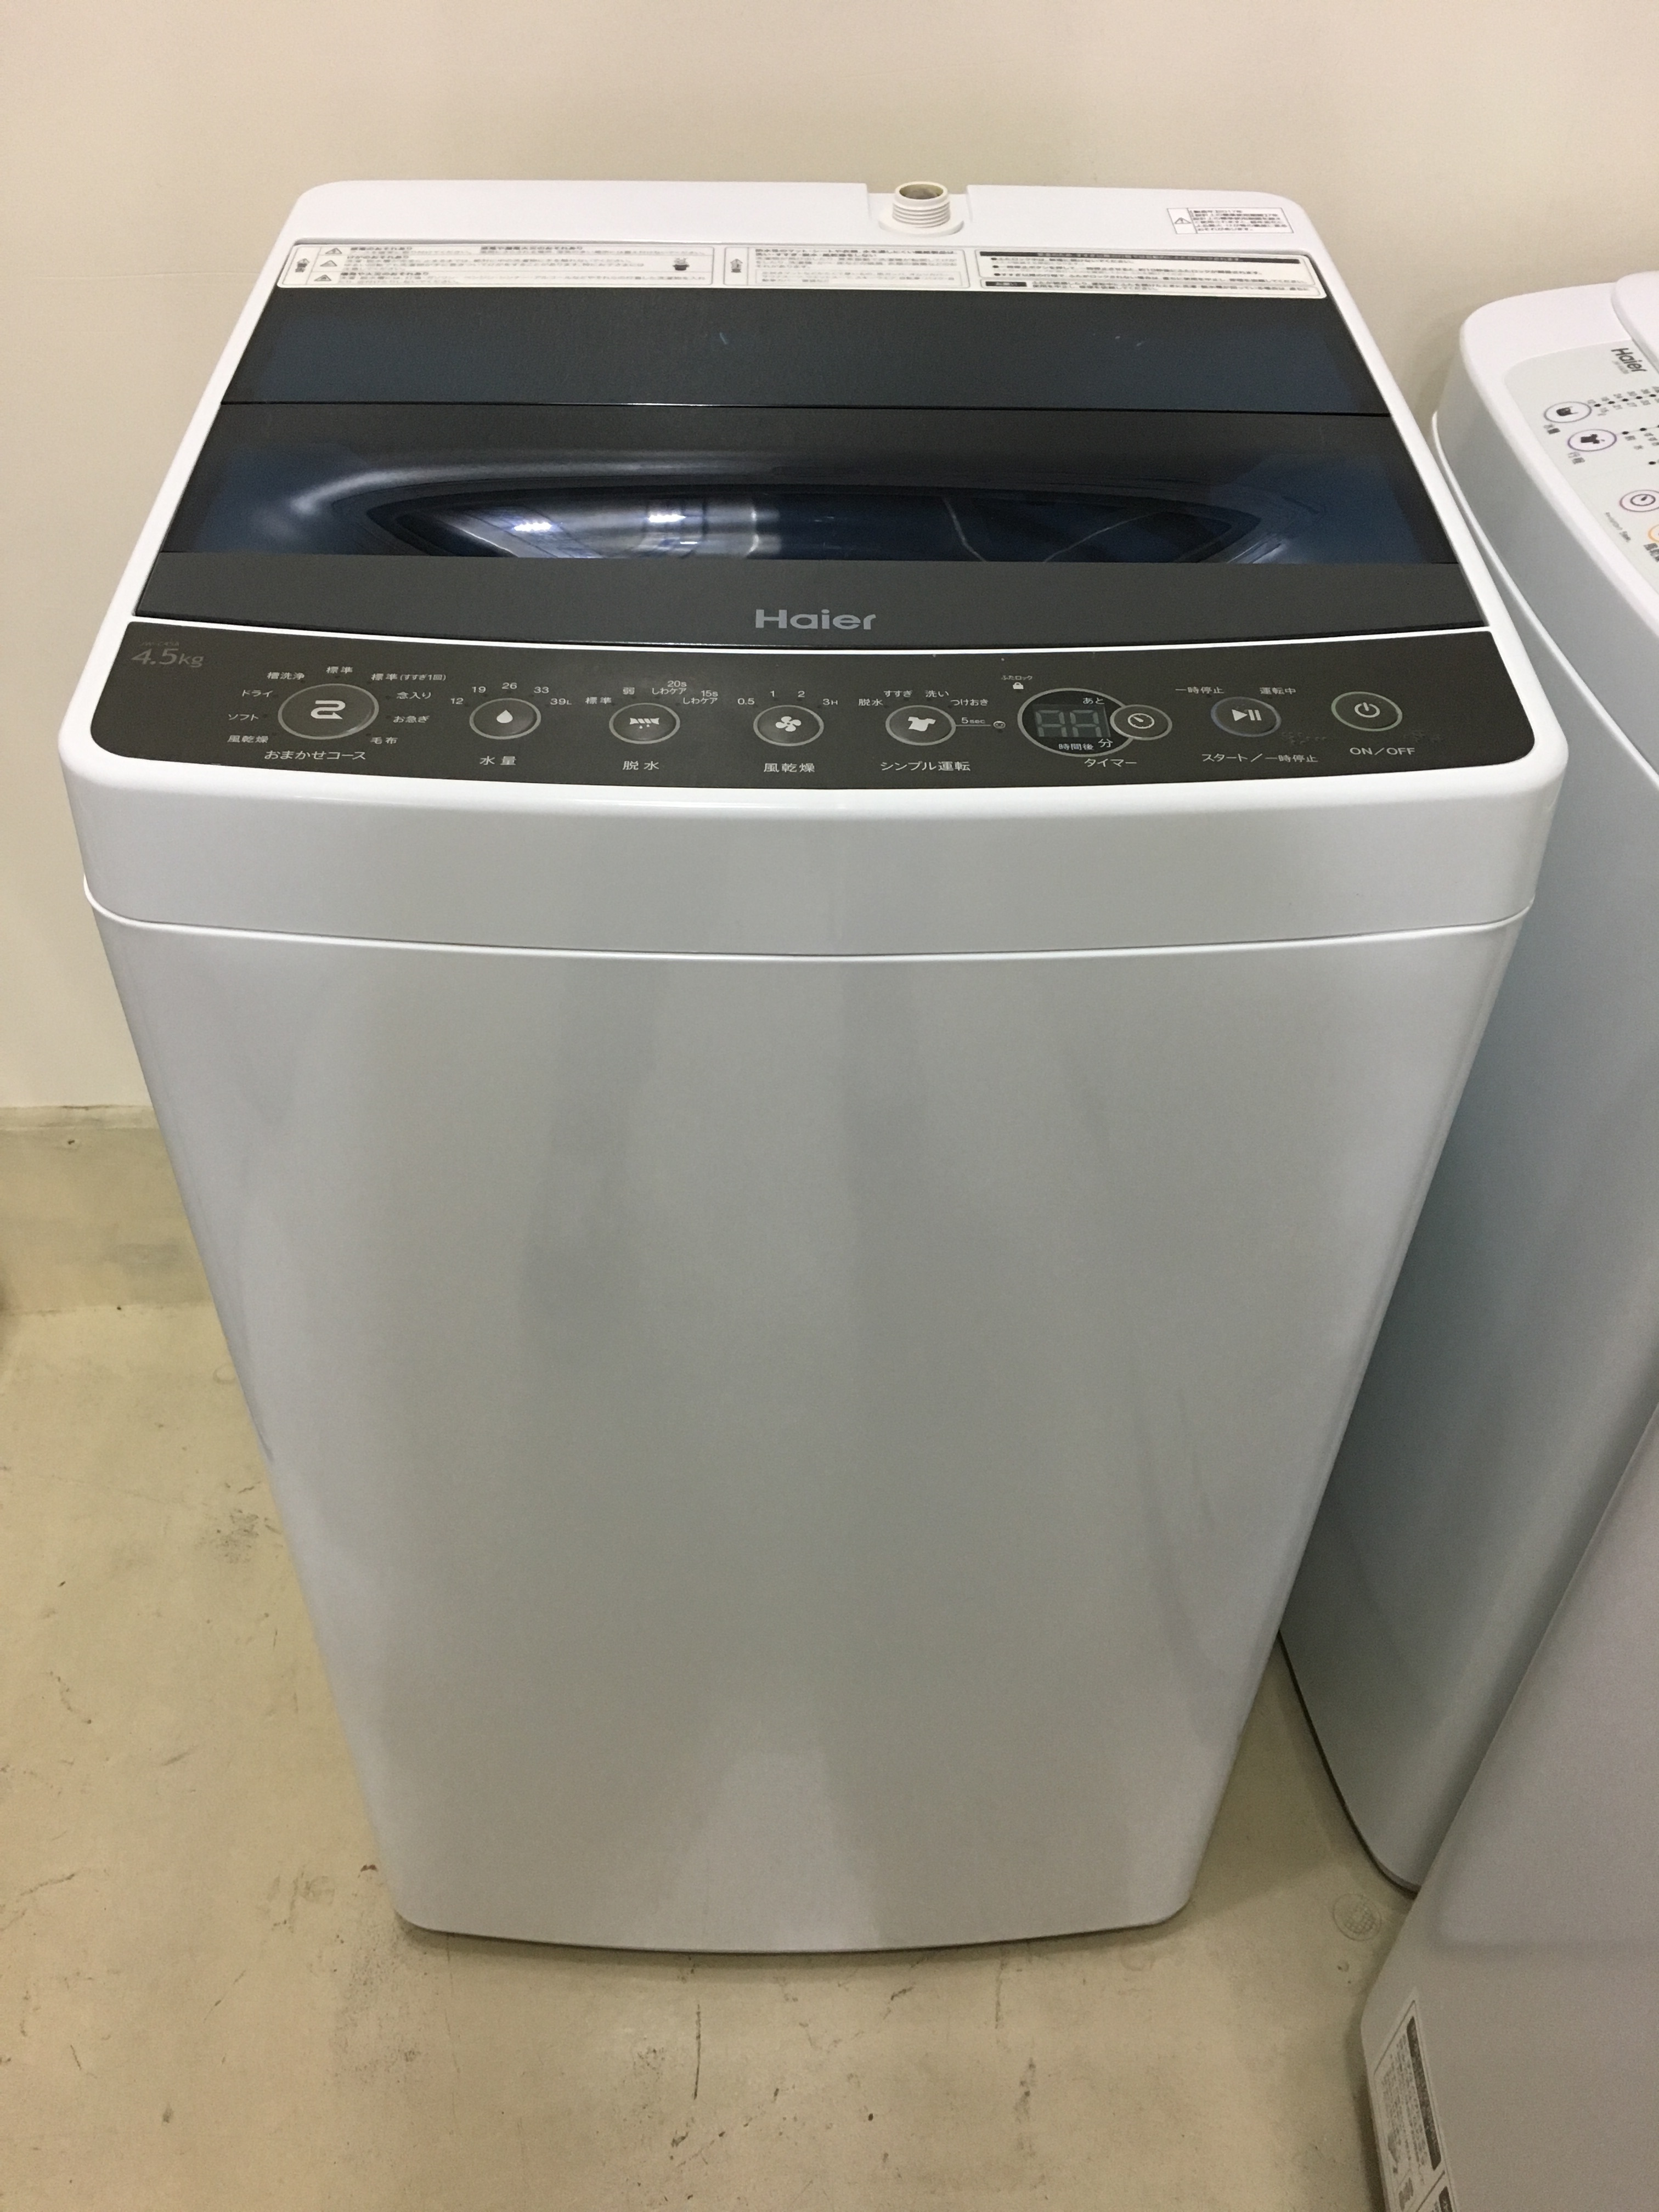 洗濯機 ハイアール Haier Jw C45a 17年製 4 5kg 宇都宮のリサイクルショップ オトワリバース